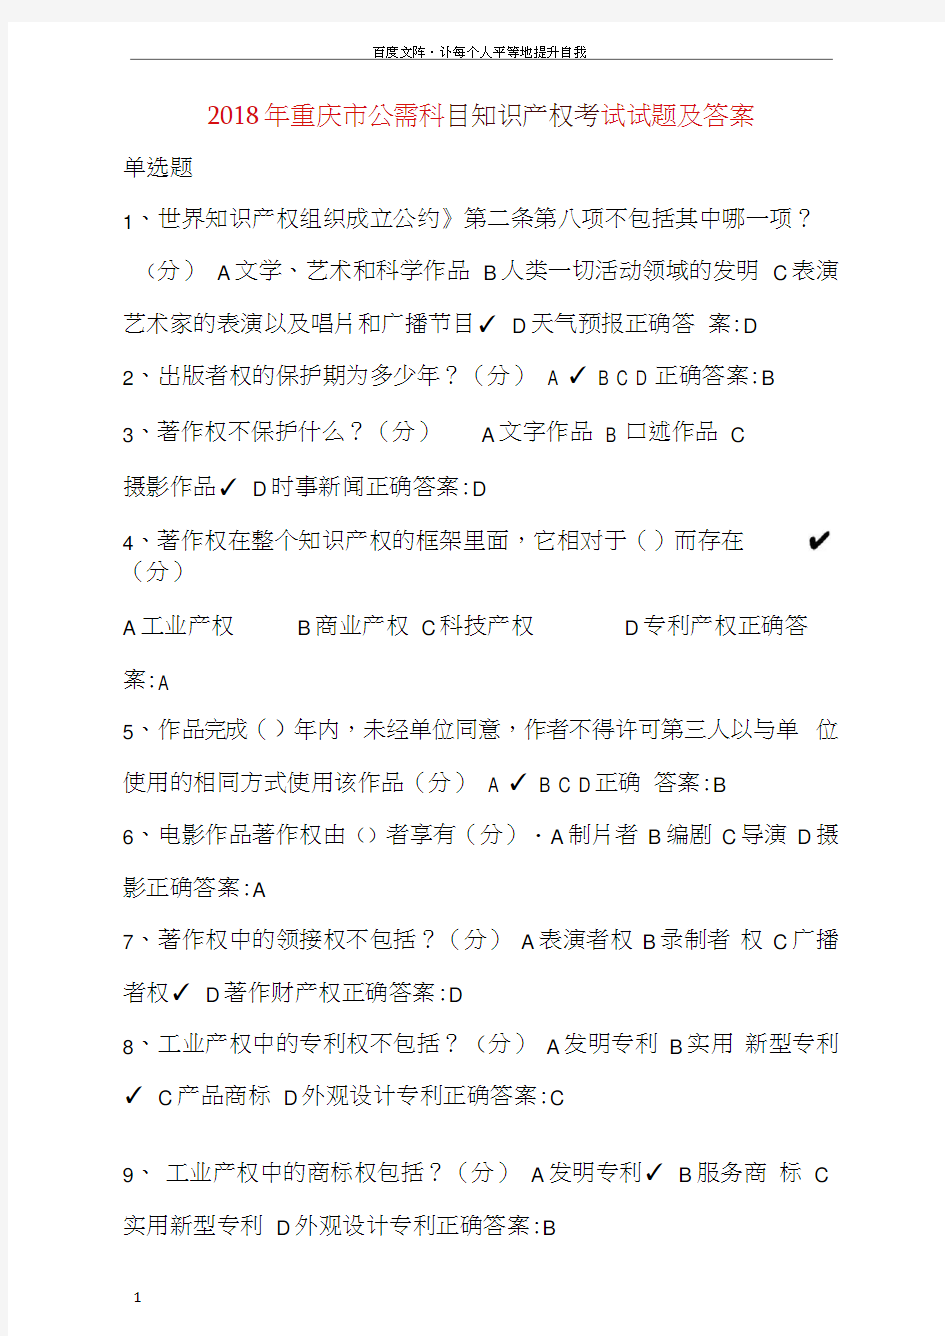 2018年重庆市公需科目知识产权考试试题及答案(供参考)